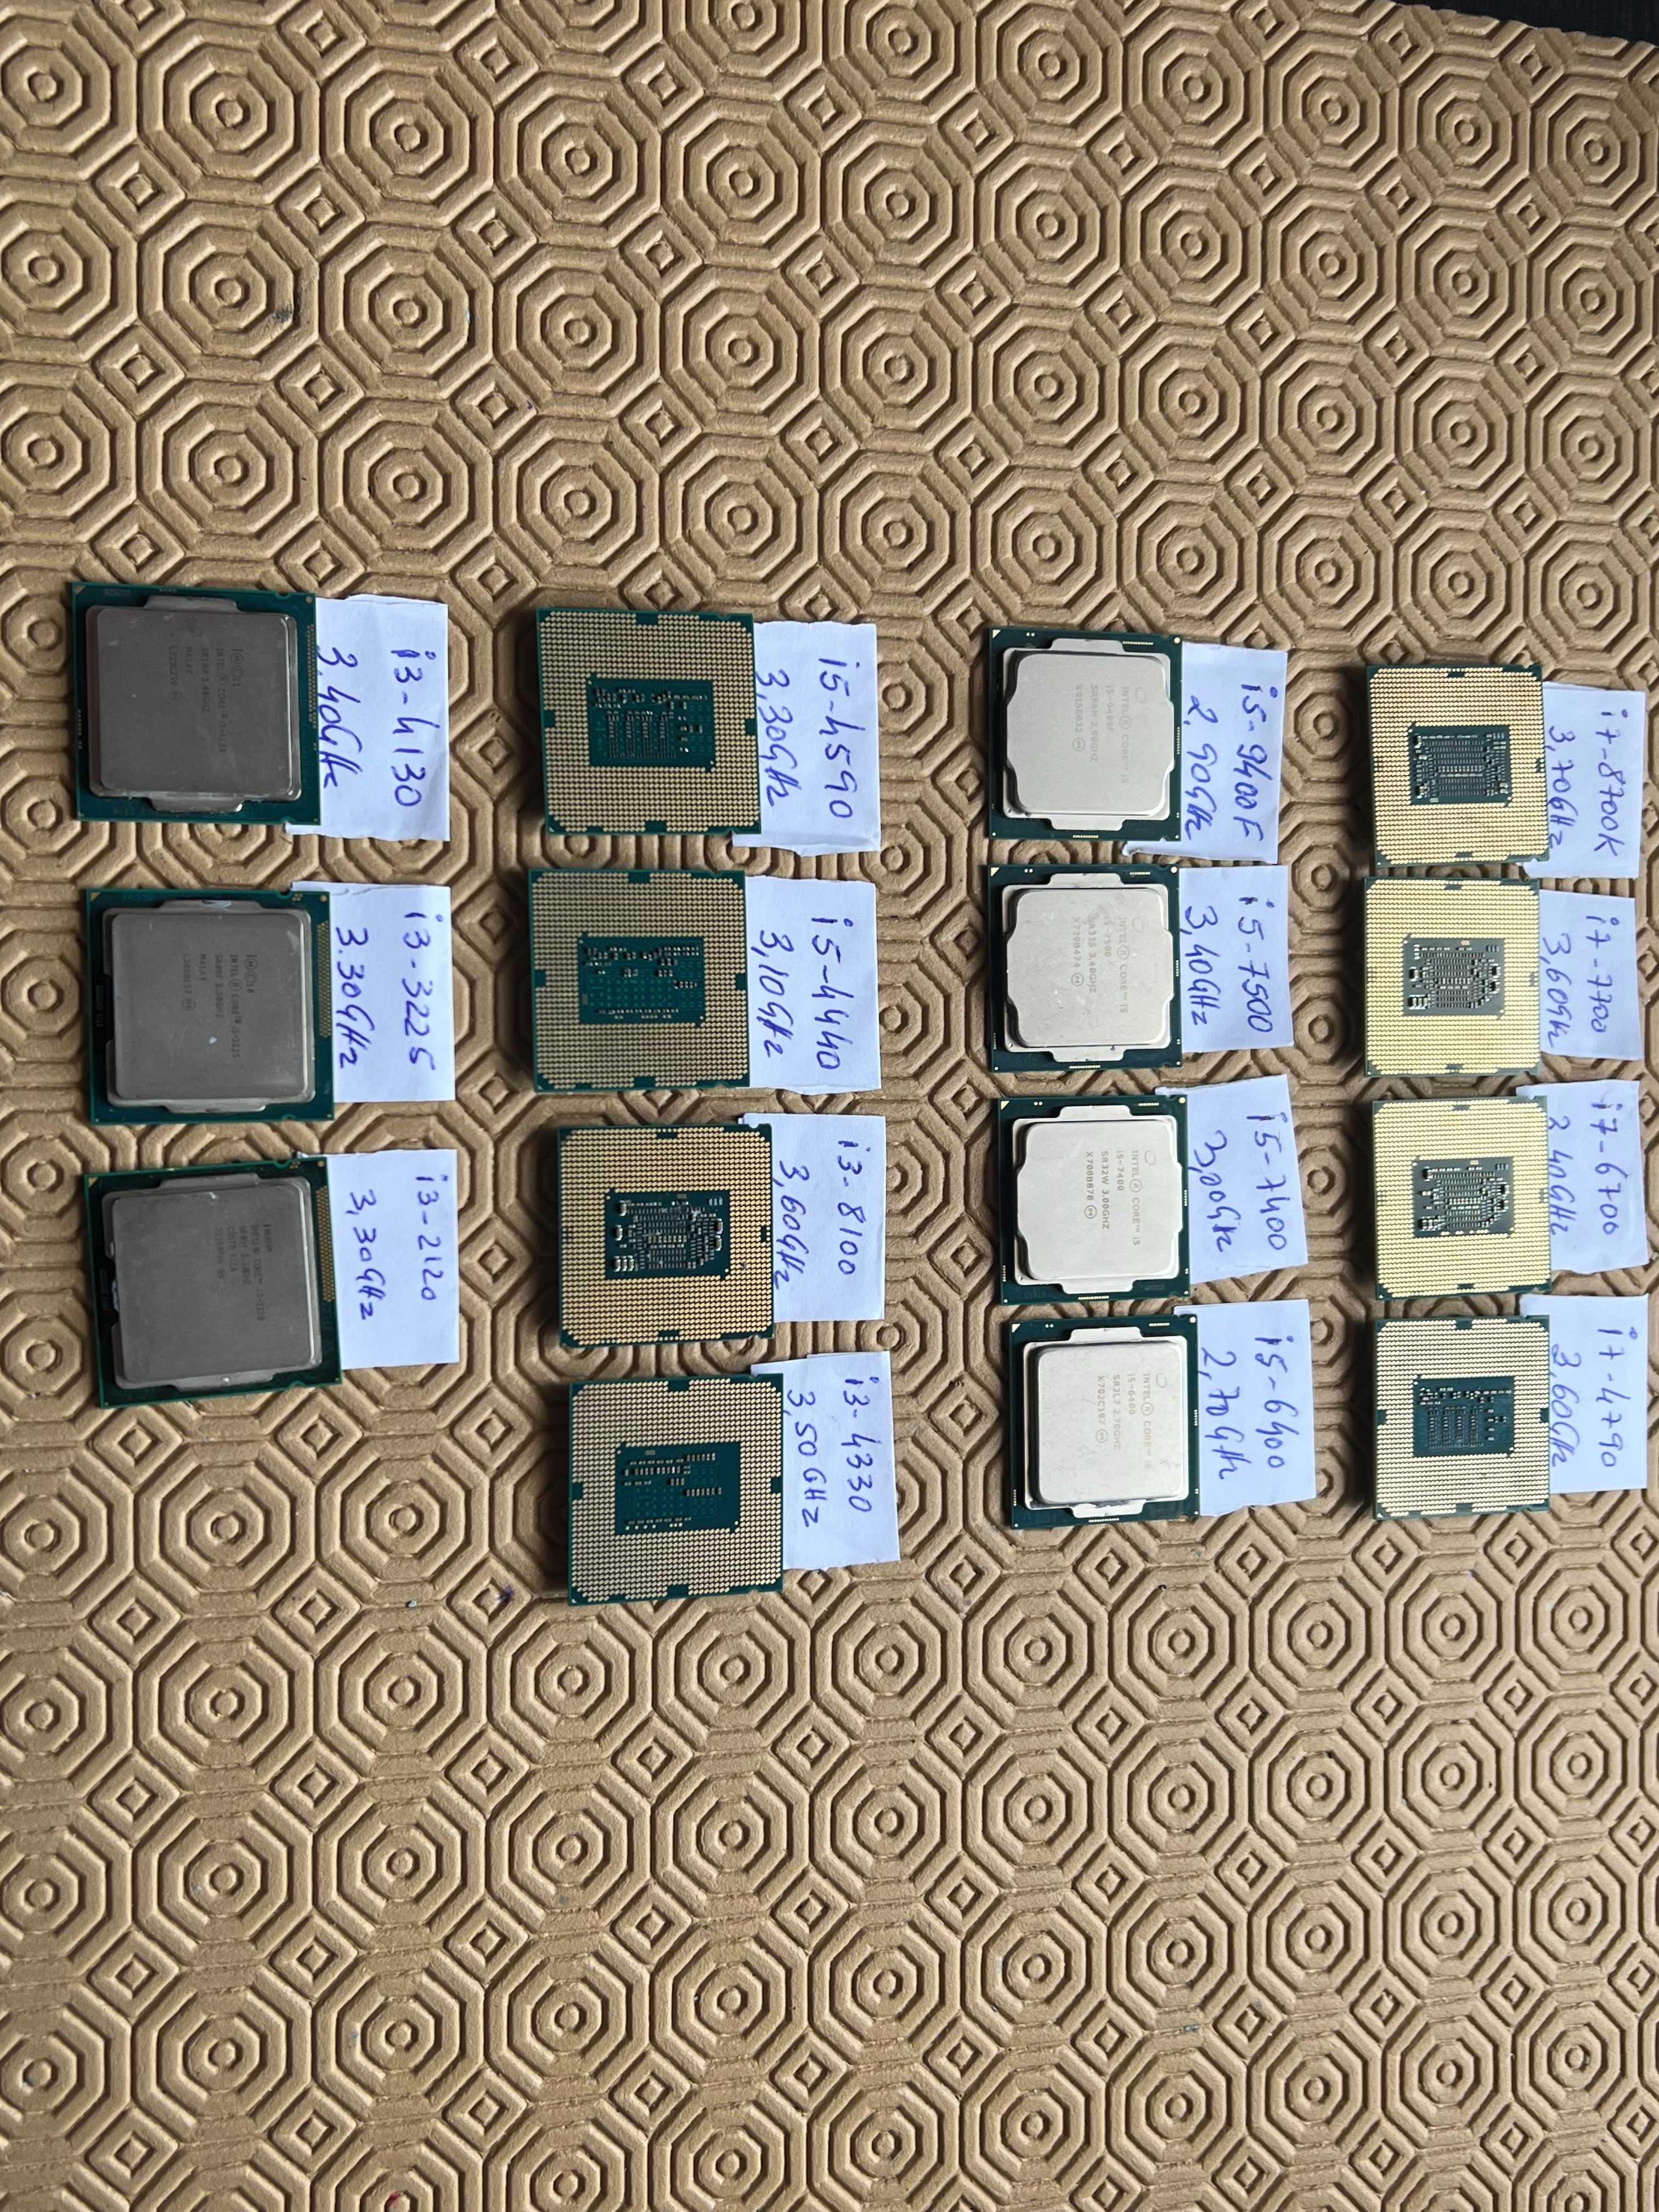 Processadores/Cpu Intel Core i7 / i5 / i3